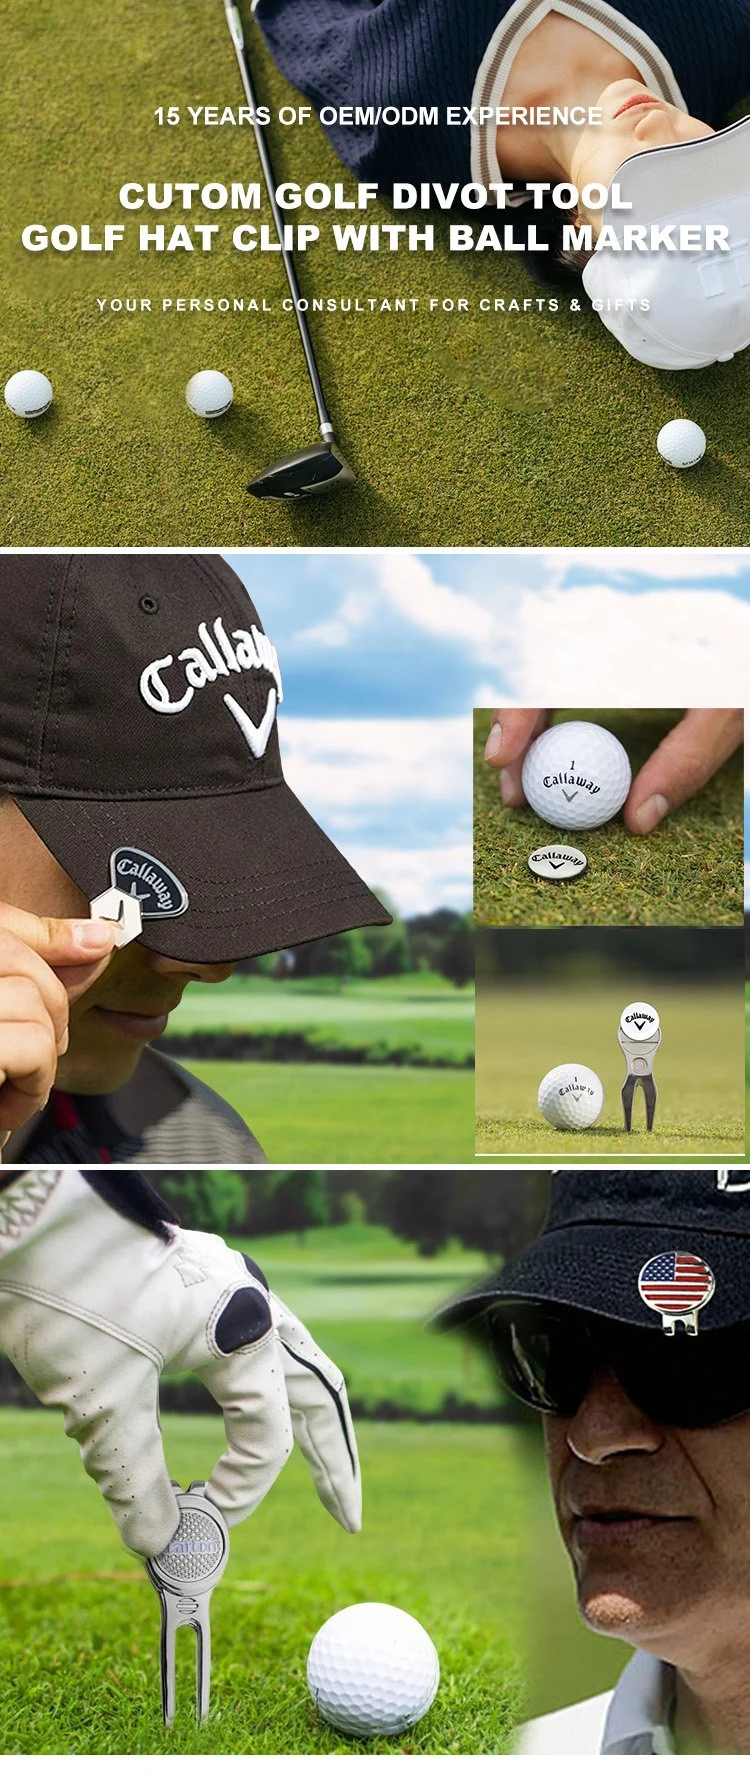 Whats Use Ball Marker Set Bottle Opener Cigar Holder Brush Australia and The Pros Custom Blank Magnet Callaway Golf Repair Golf Divot Tool